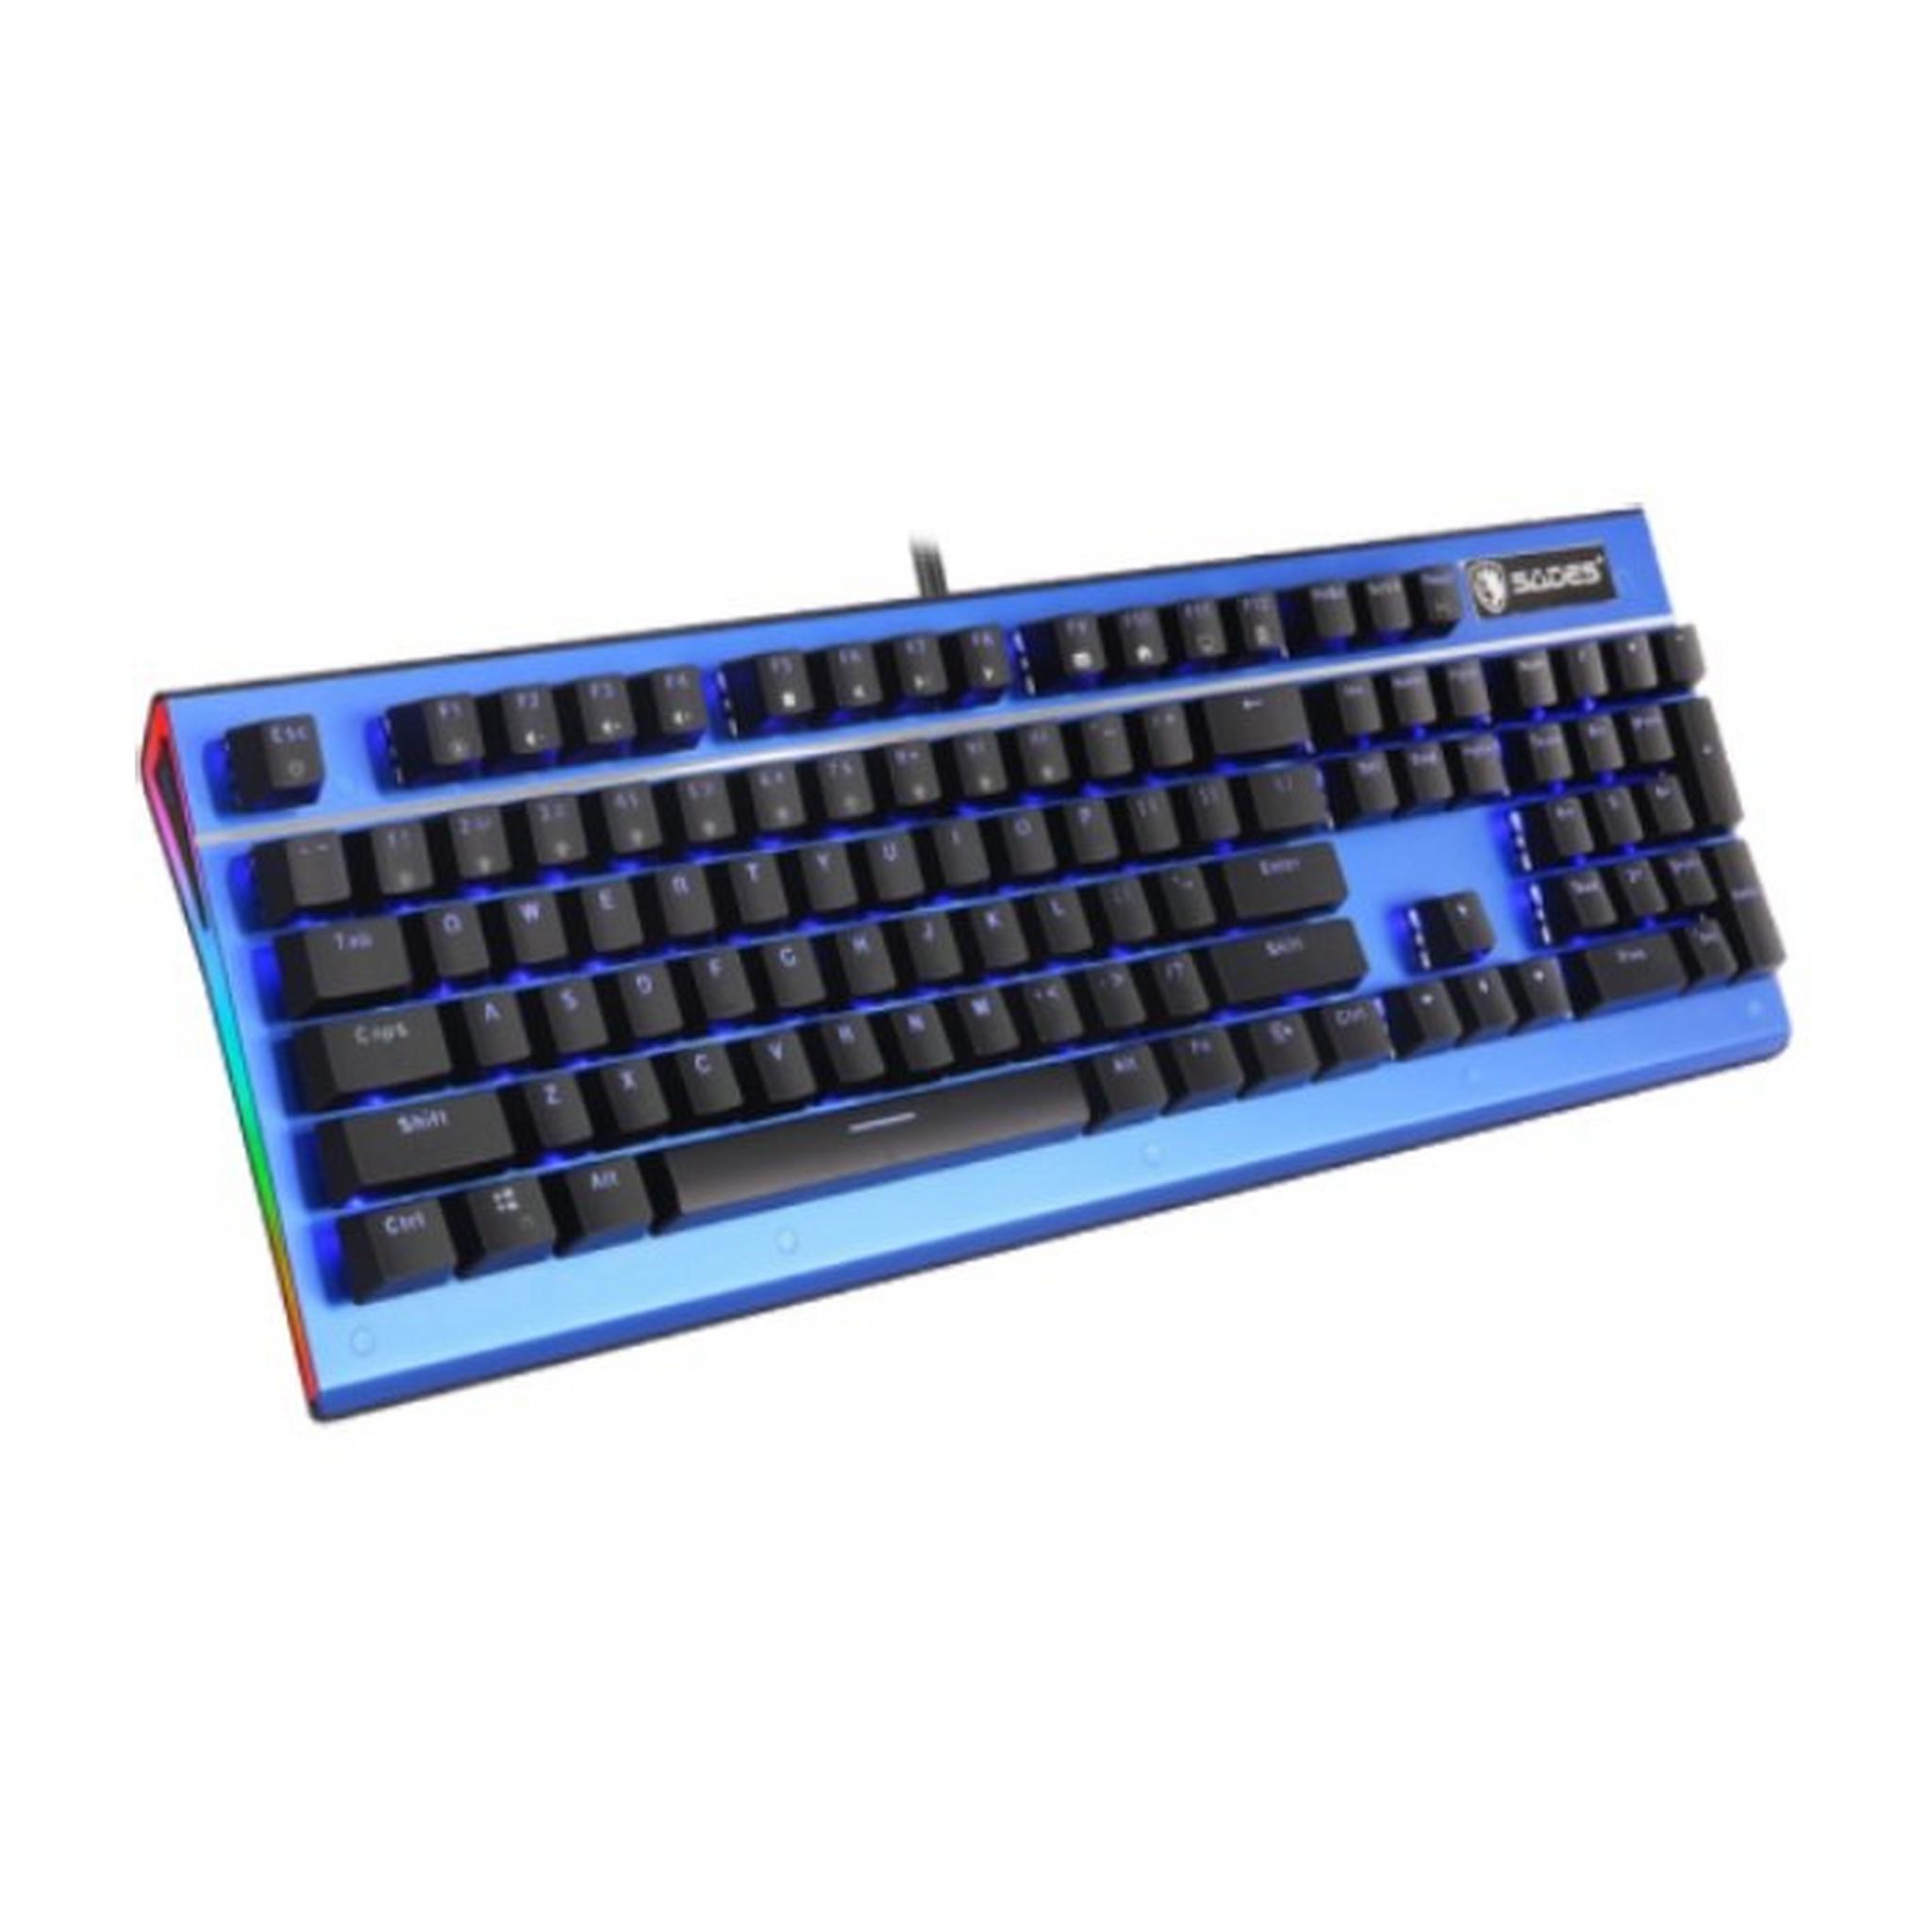 Sades K13 Sickle Mechanical Gaming Keyboard